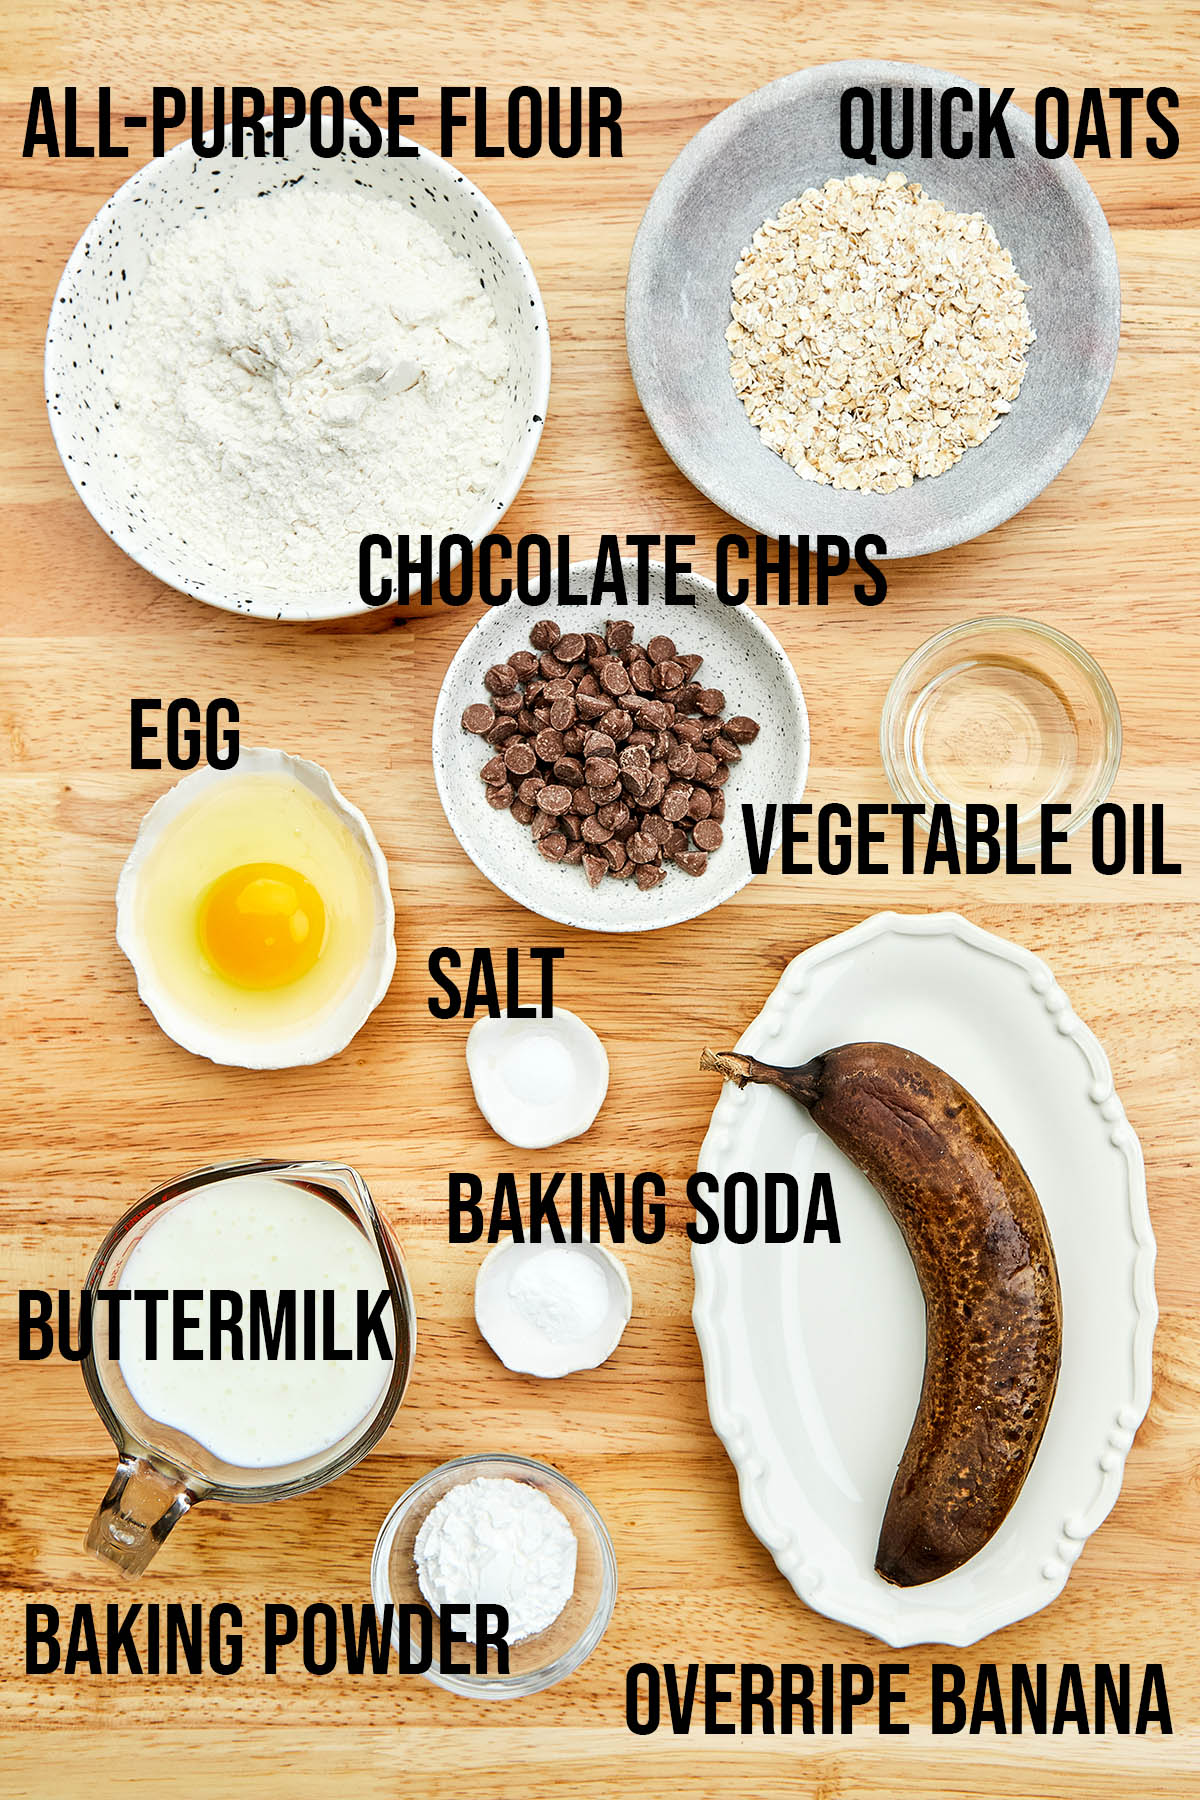 Ingredients to make banana chocolate chip pancakes.